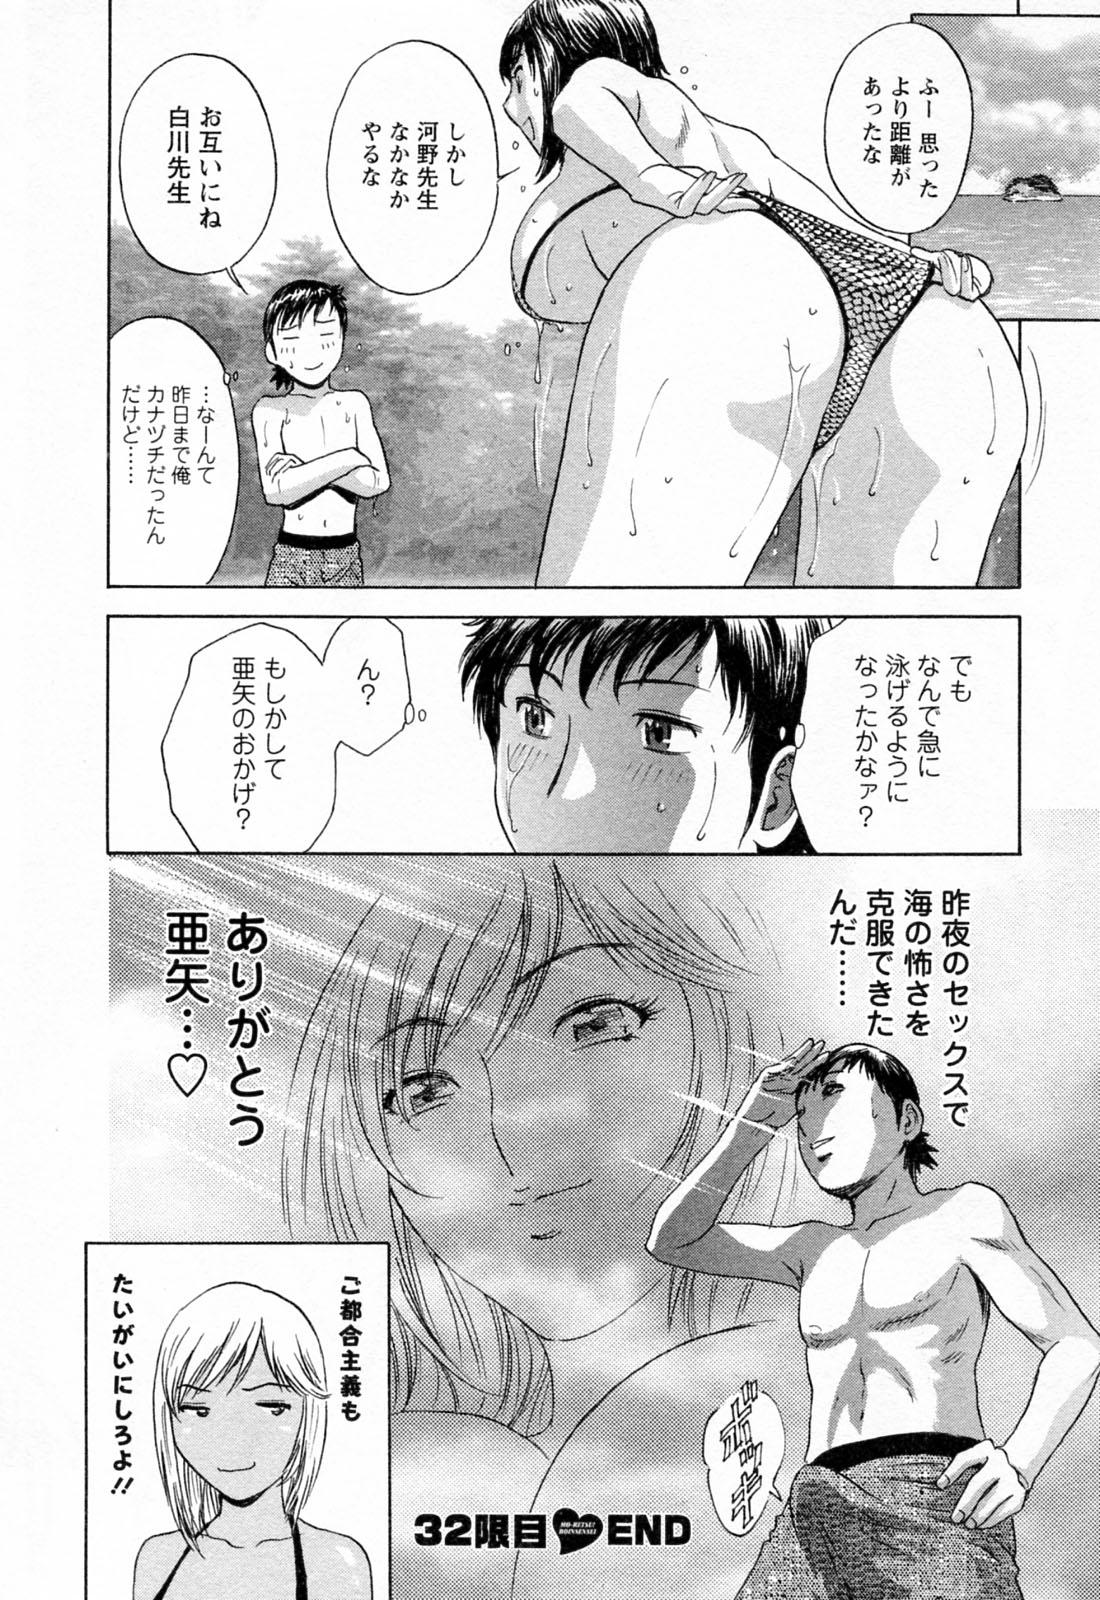 [Hidemaru] Mo-Retsu! Boin Sensei (Boing Boing Teacher) Vol.4 113